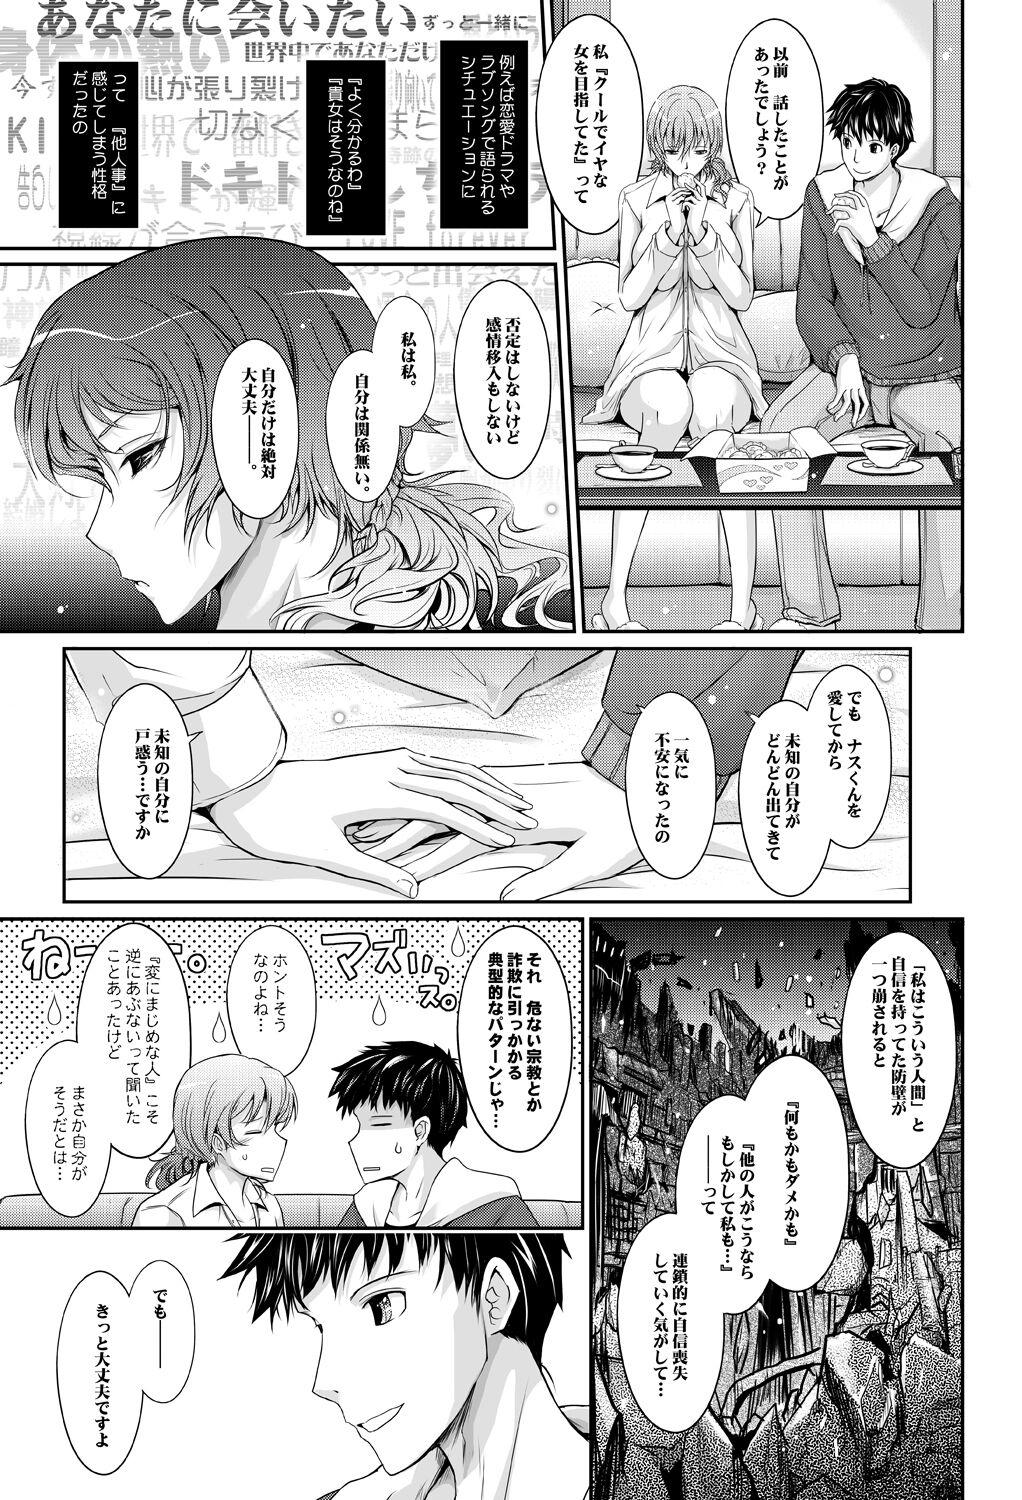 Hymen Amaku Iyagaru Kanojo no Chijou Episode 3 - Original Gape - Page 11